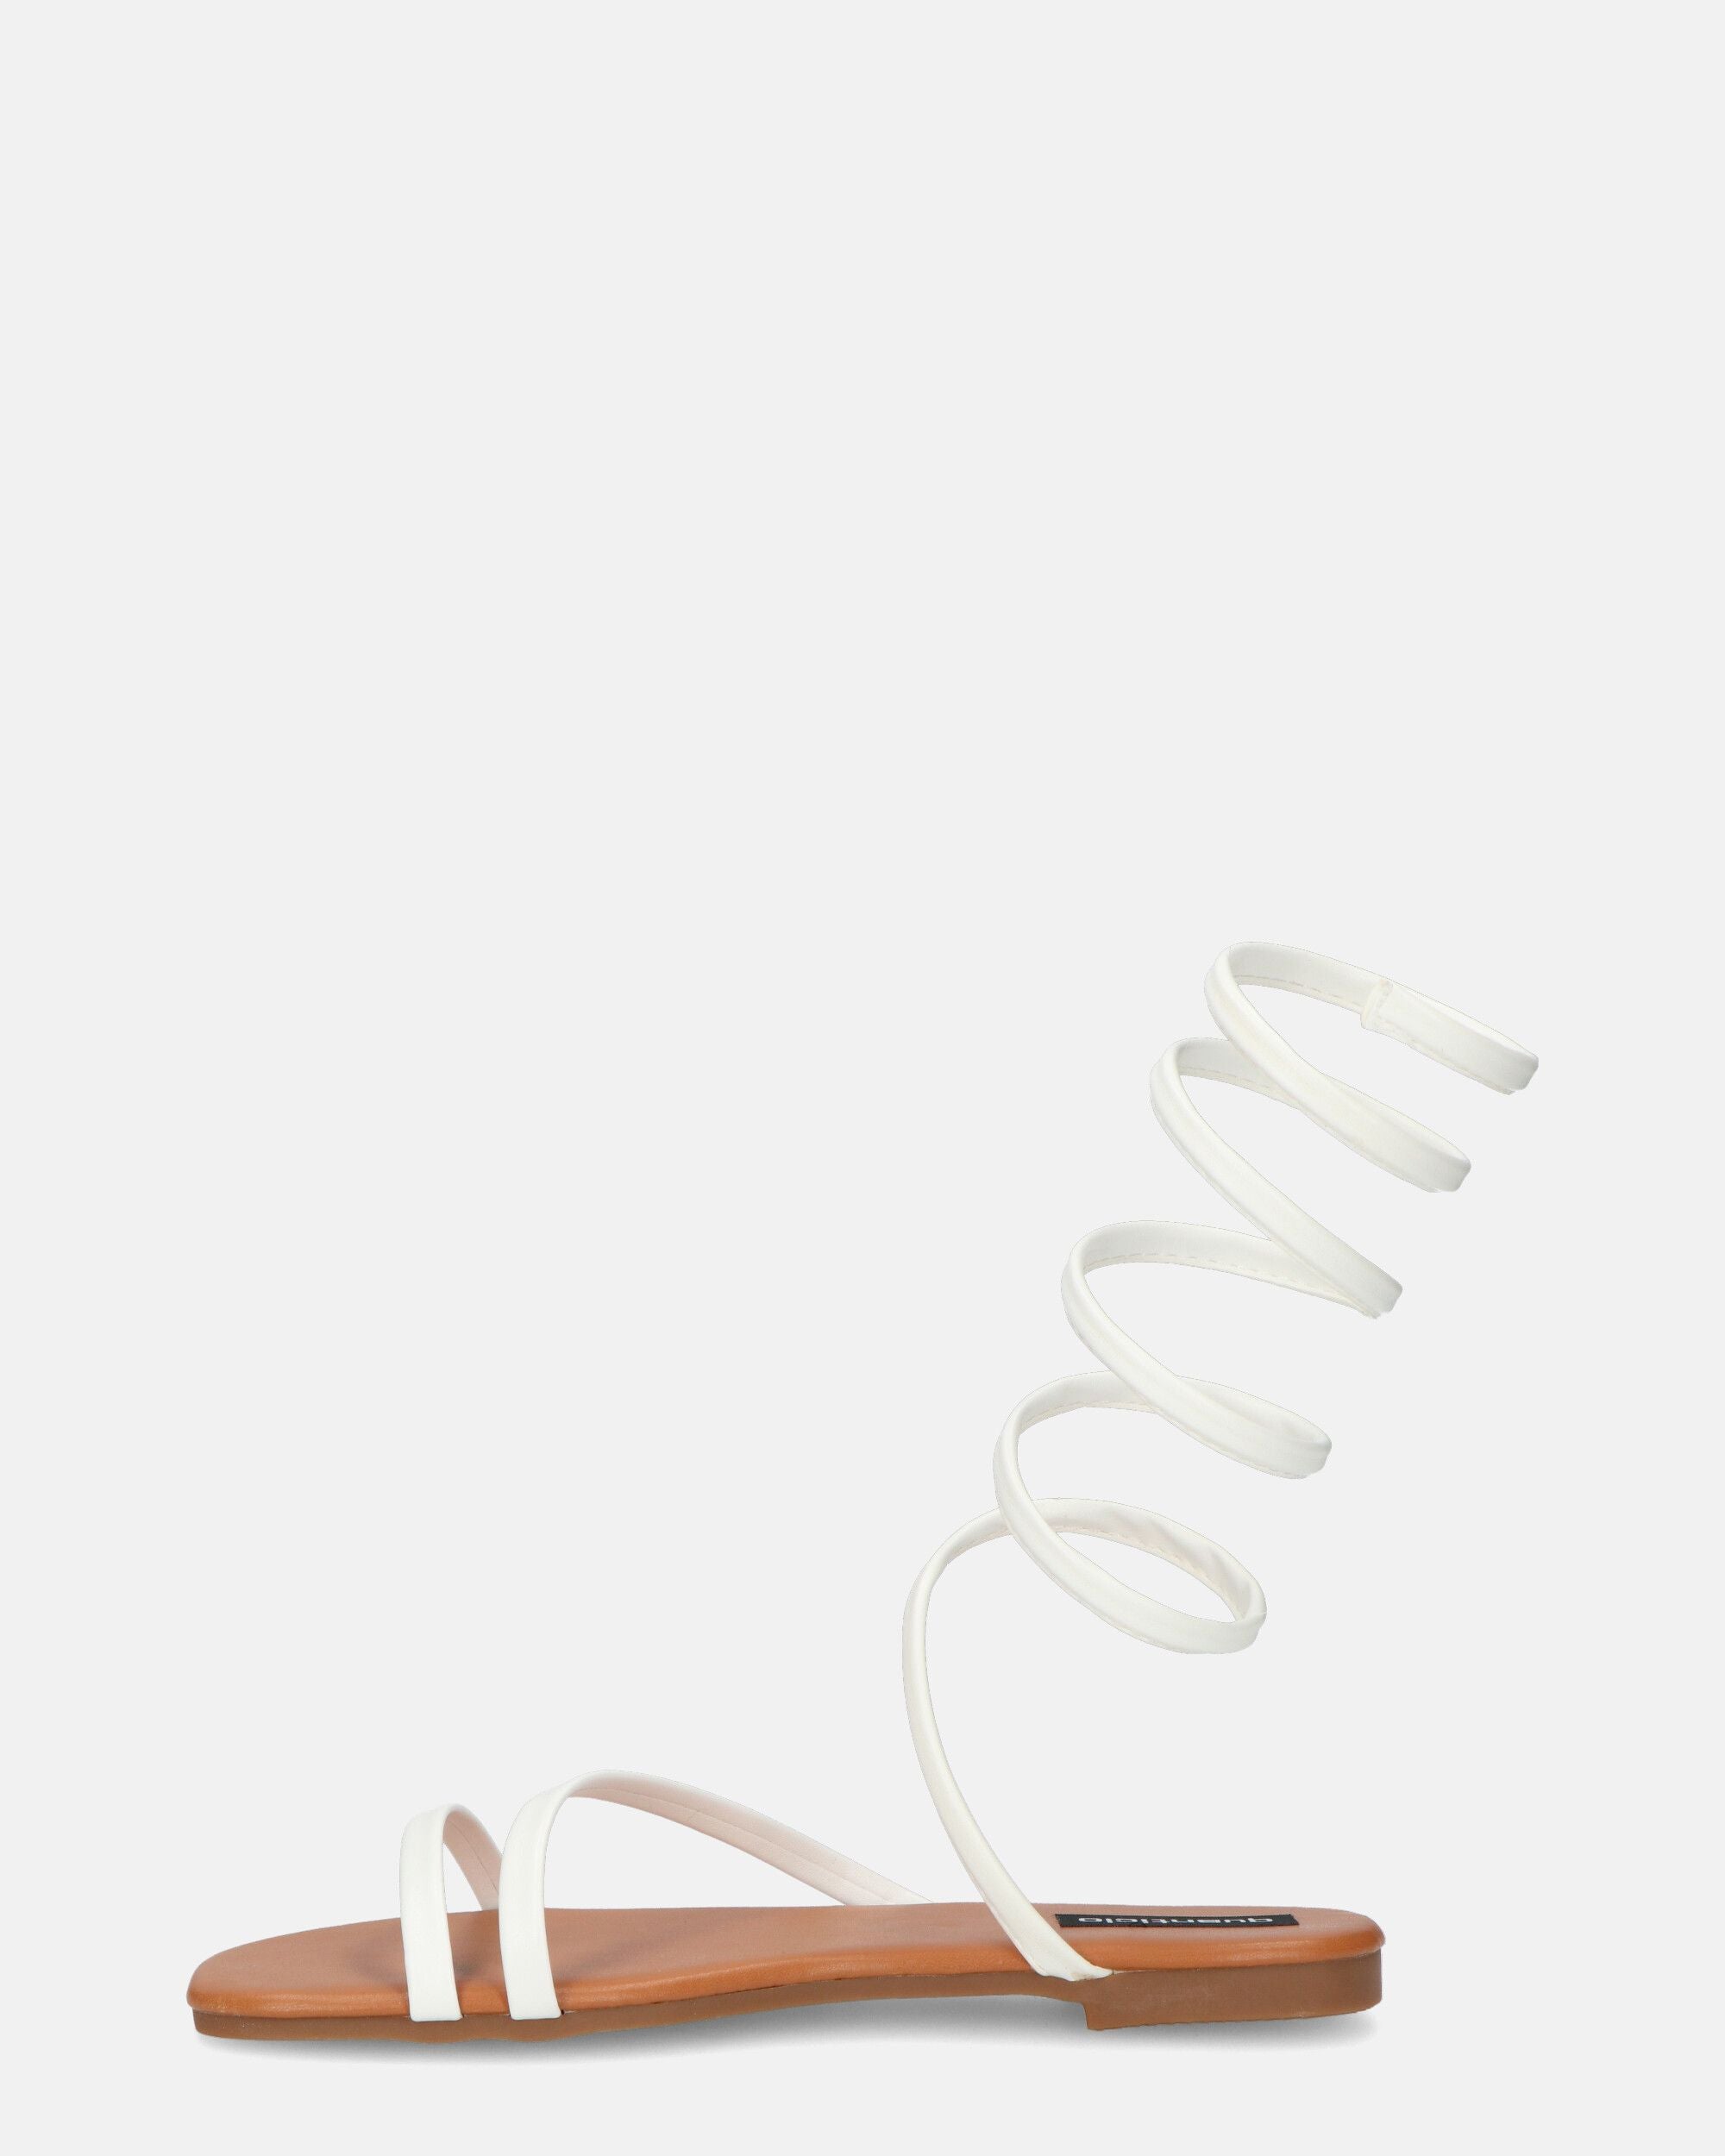 SIENNA - sandales à semelle marron et spirale blanche